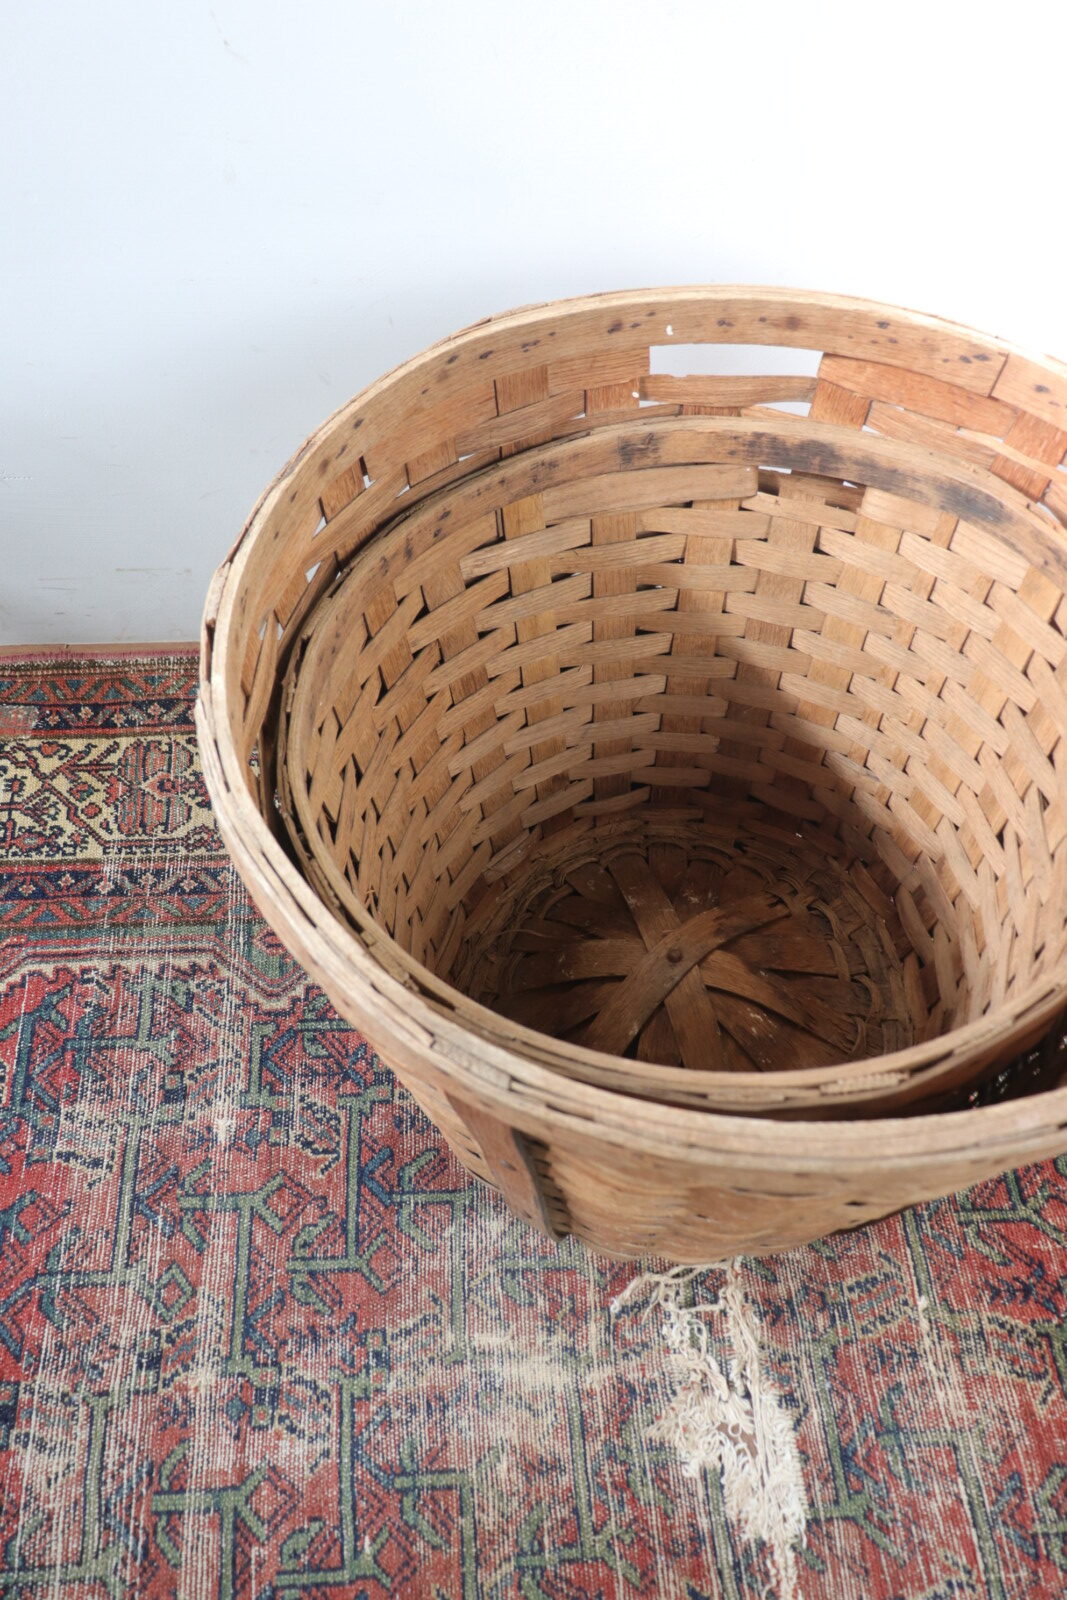 splint basket,oak basket,USA,vintage,round basket